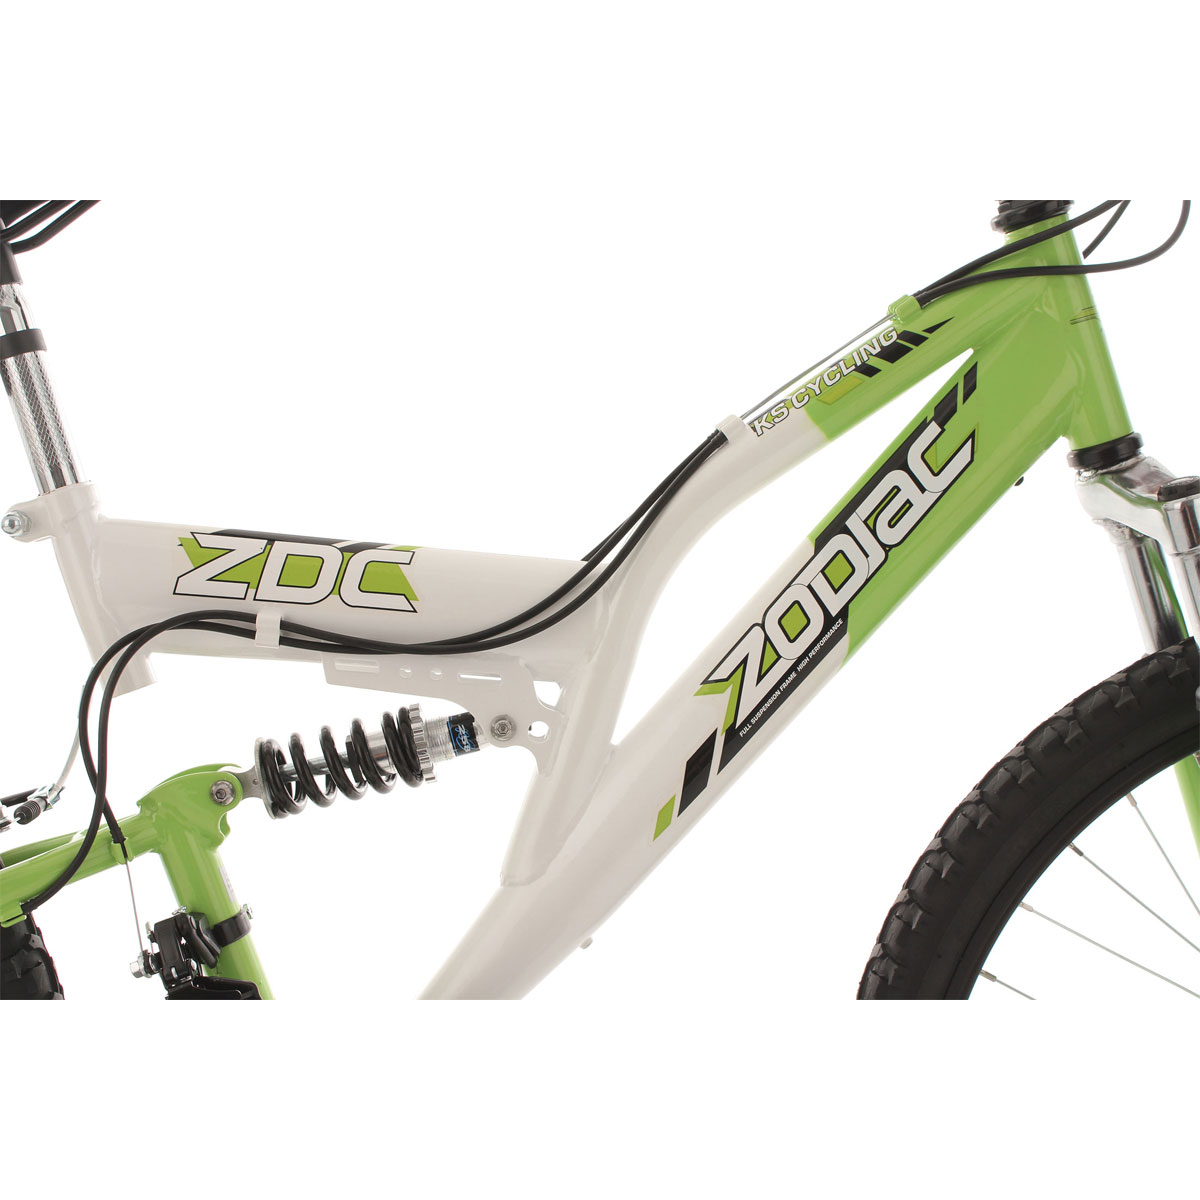 Jugend-Mountainbike „Zodiac“, Fully, 24 Zoll, weiß-grün